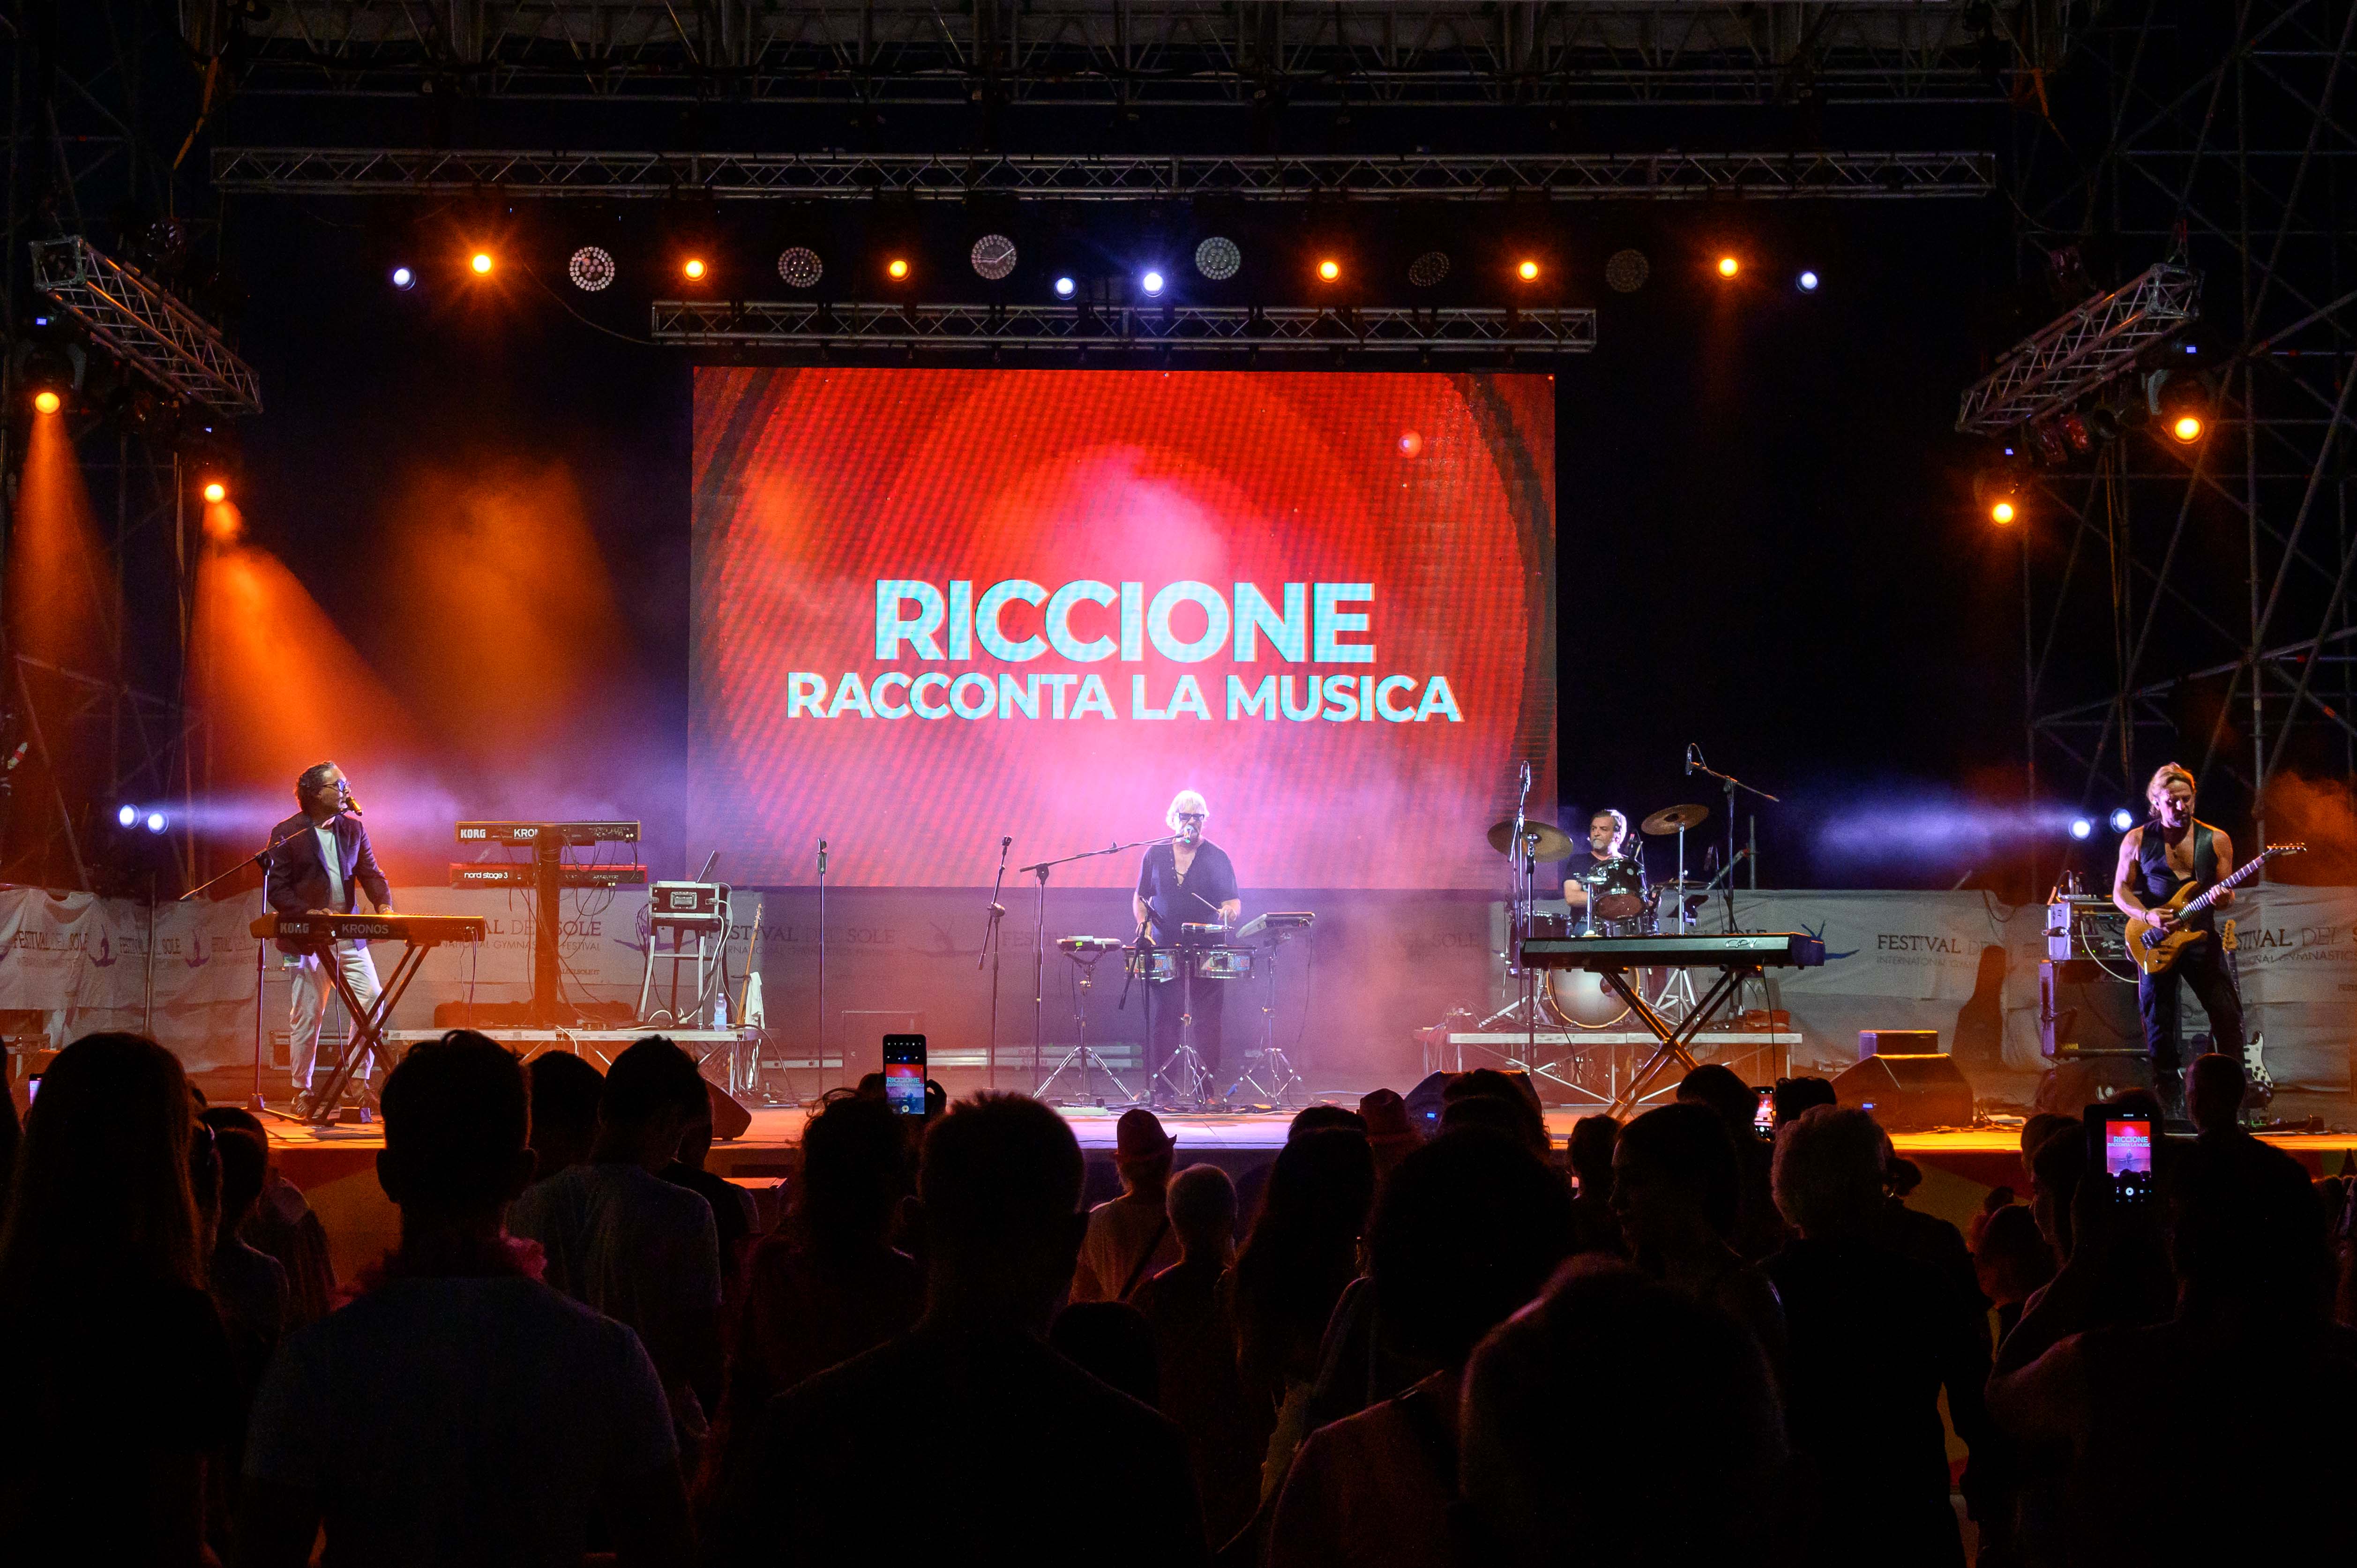 Visiit Romagna Riccione Racconta la musica_DAN_8927